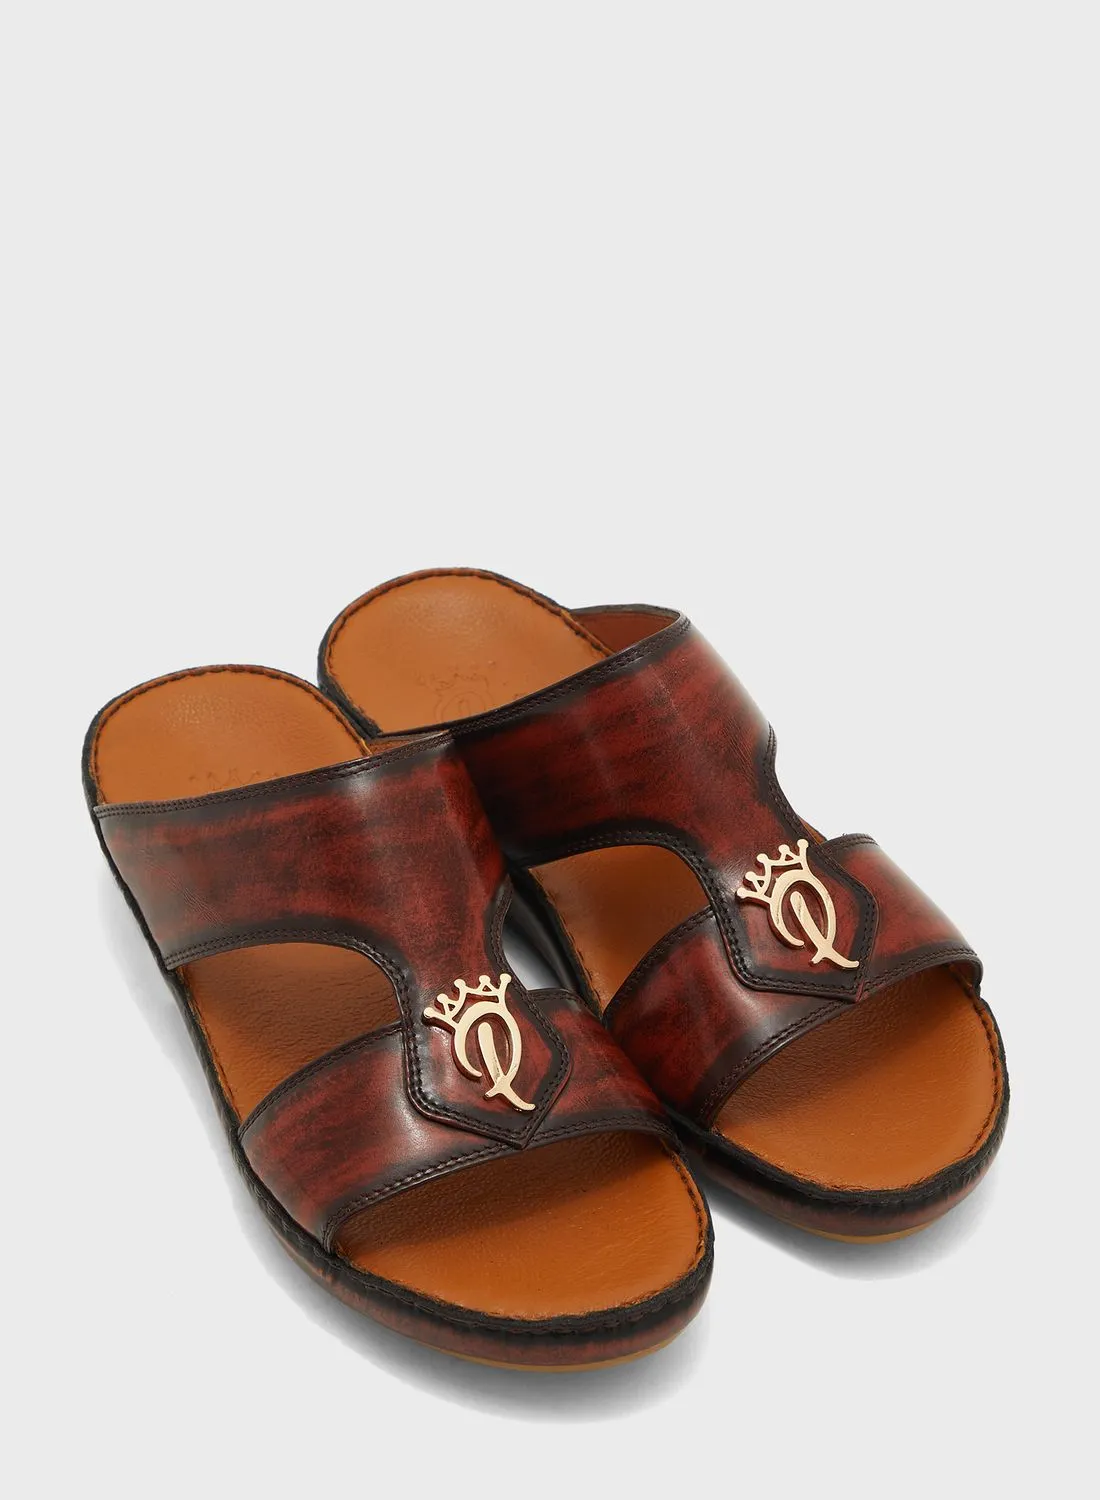 Posh La Vie Classic Arabic Sandals